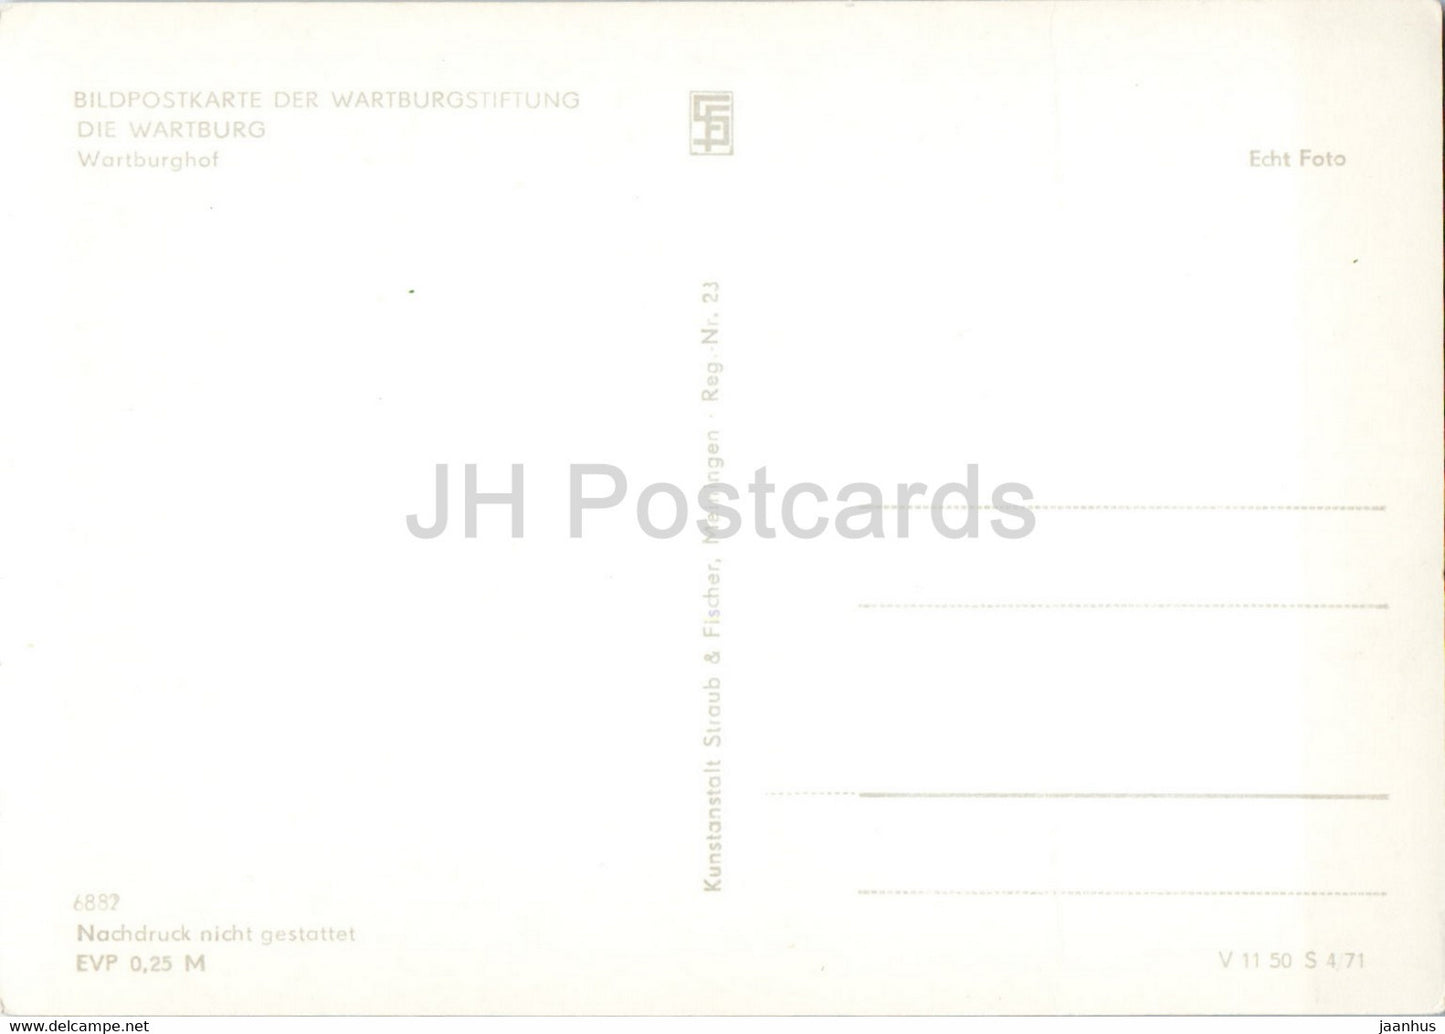 Die Wartburg - Wartburghof - old postcard - Germany DDR - unused